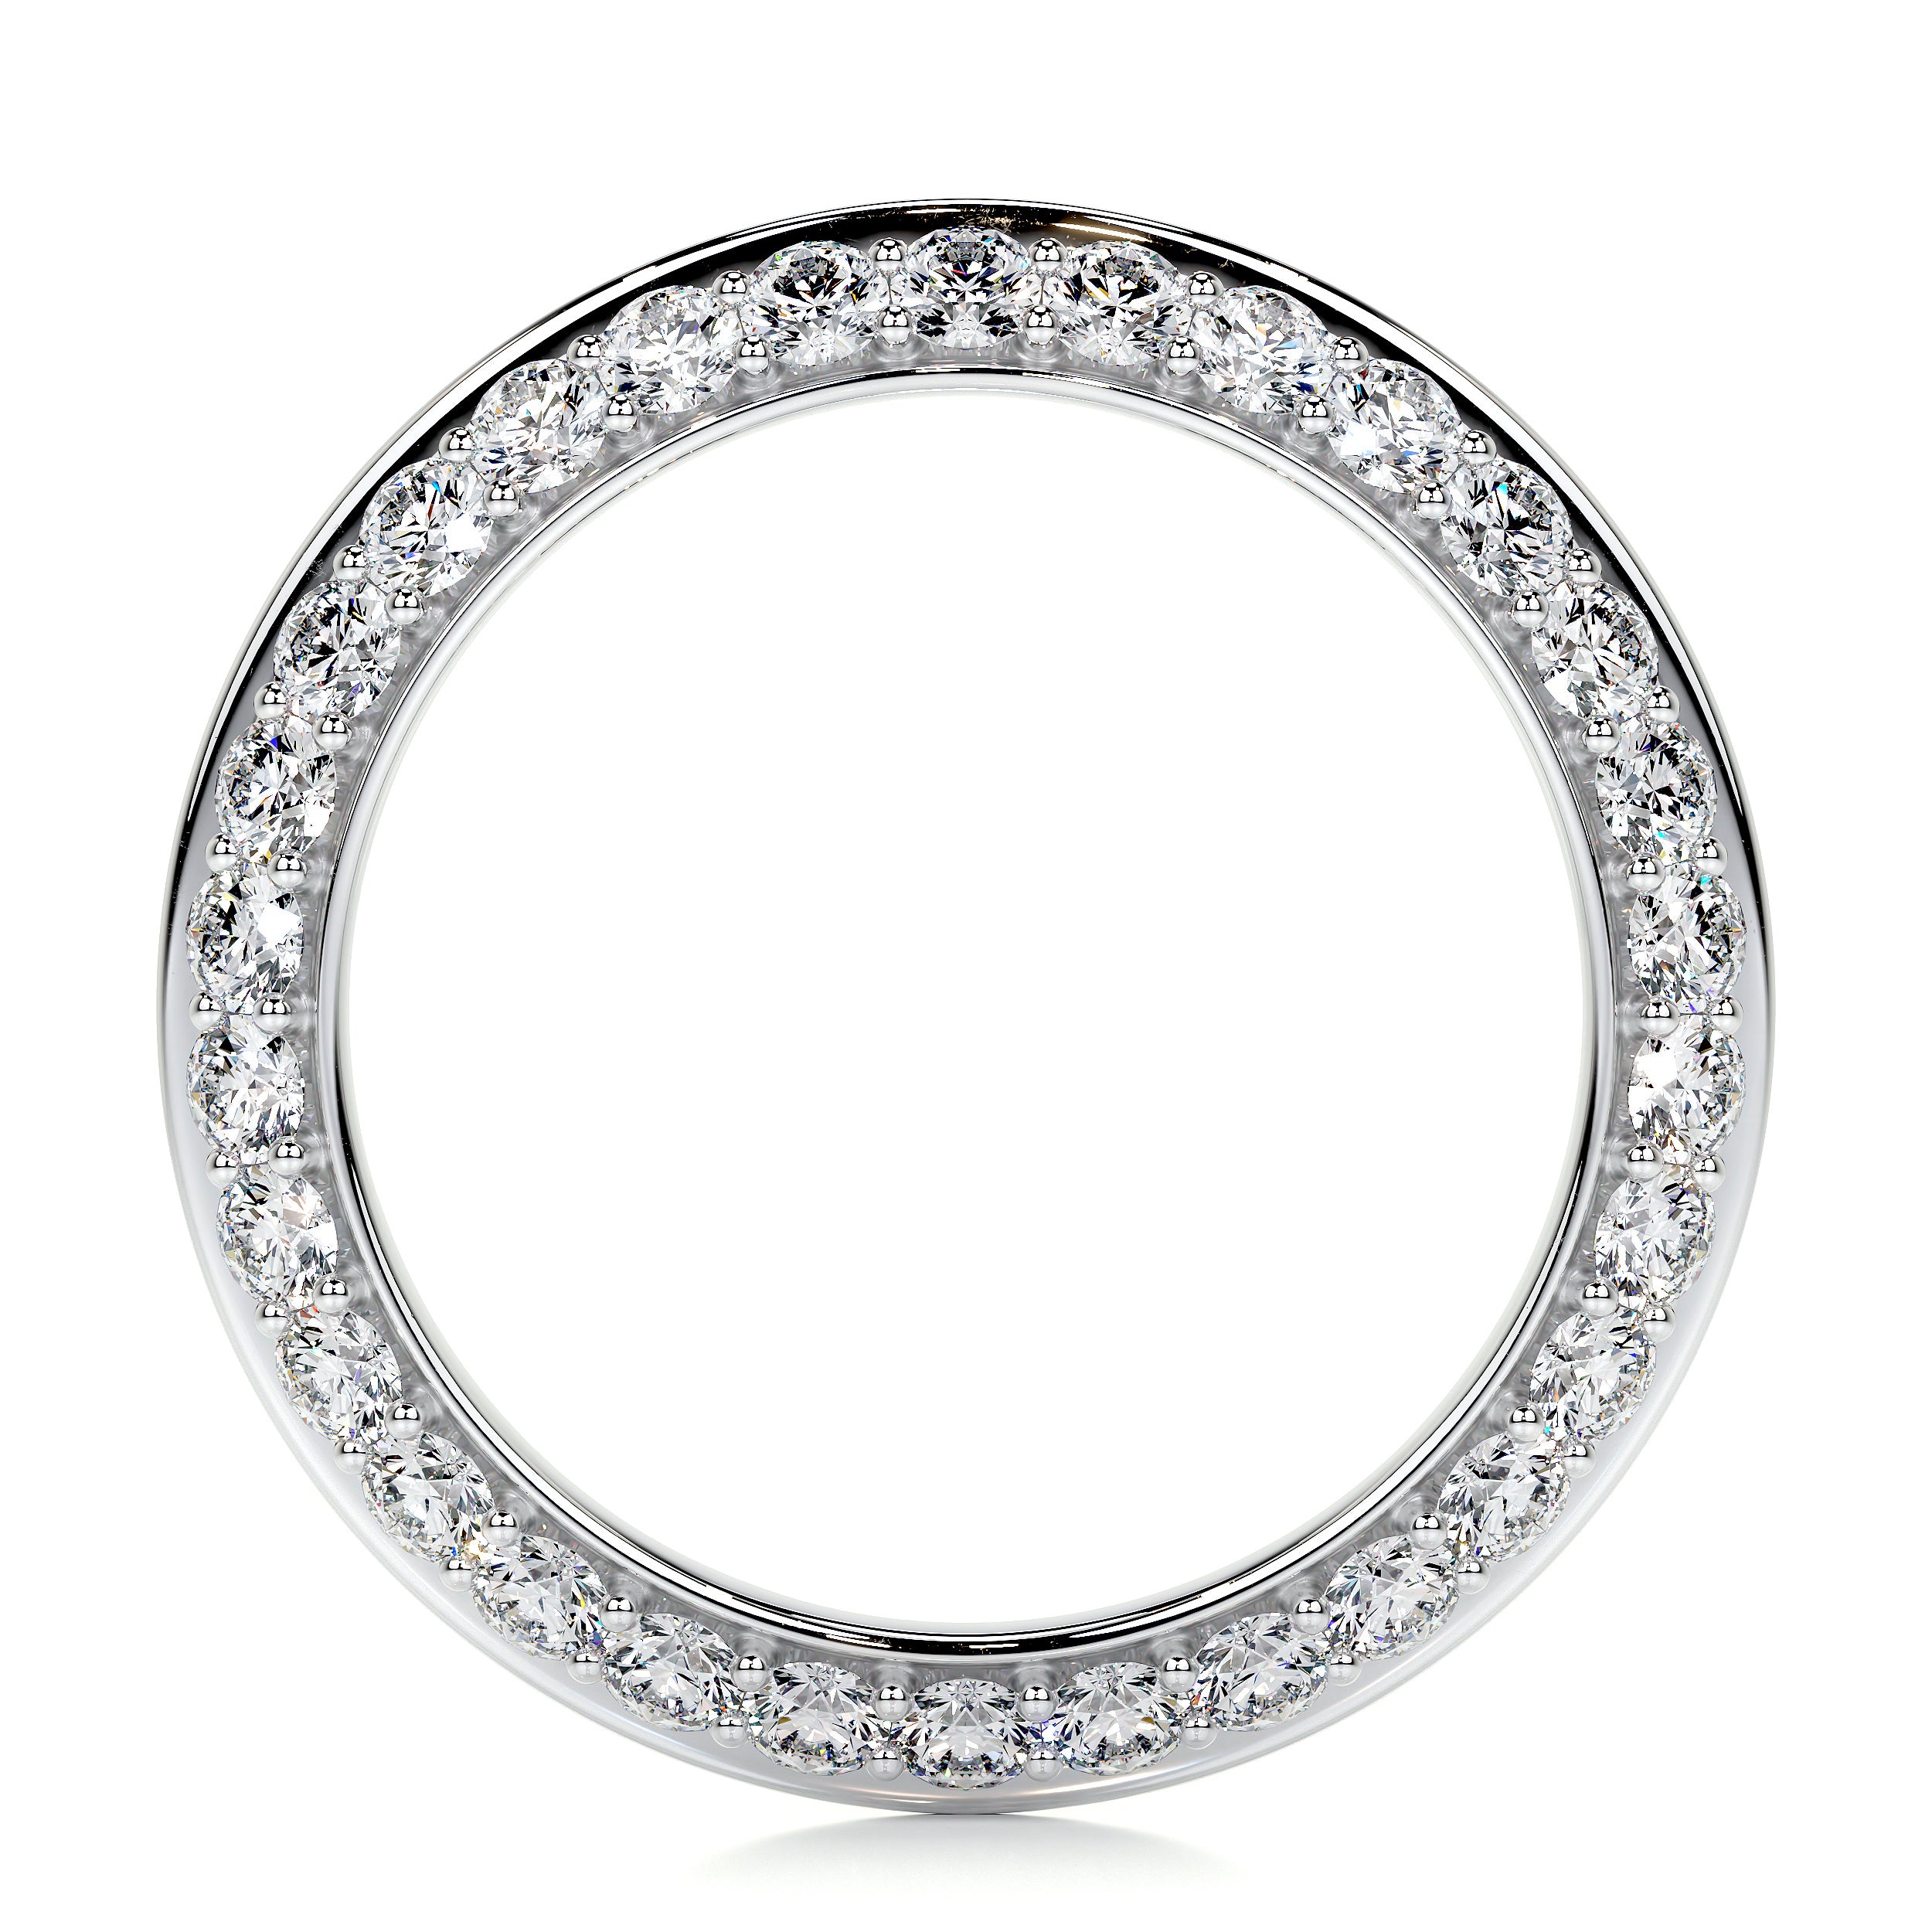 Eliana Lab Grown Diamonds Wedding Ring   (0.50 Carat) -14K White Gold